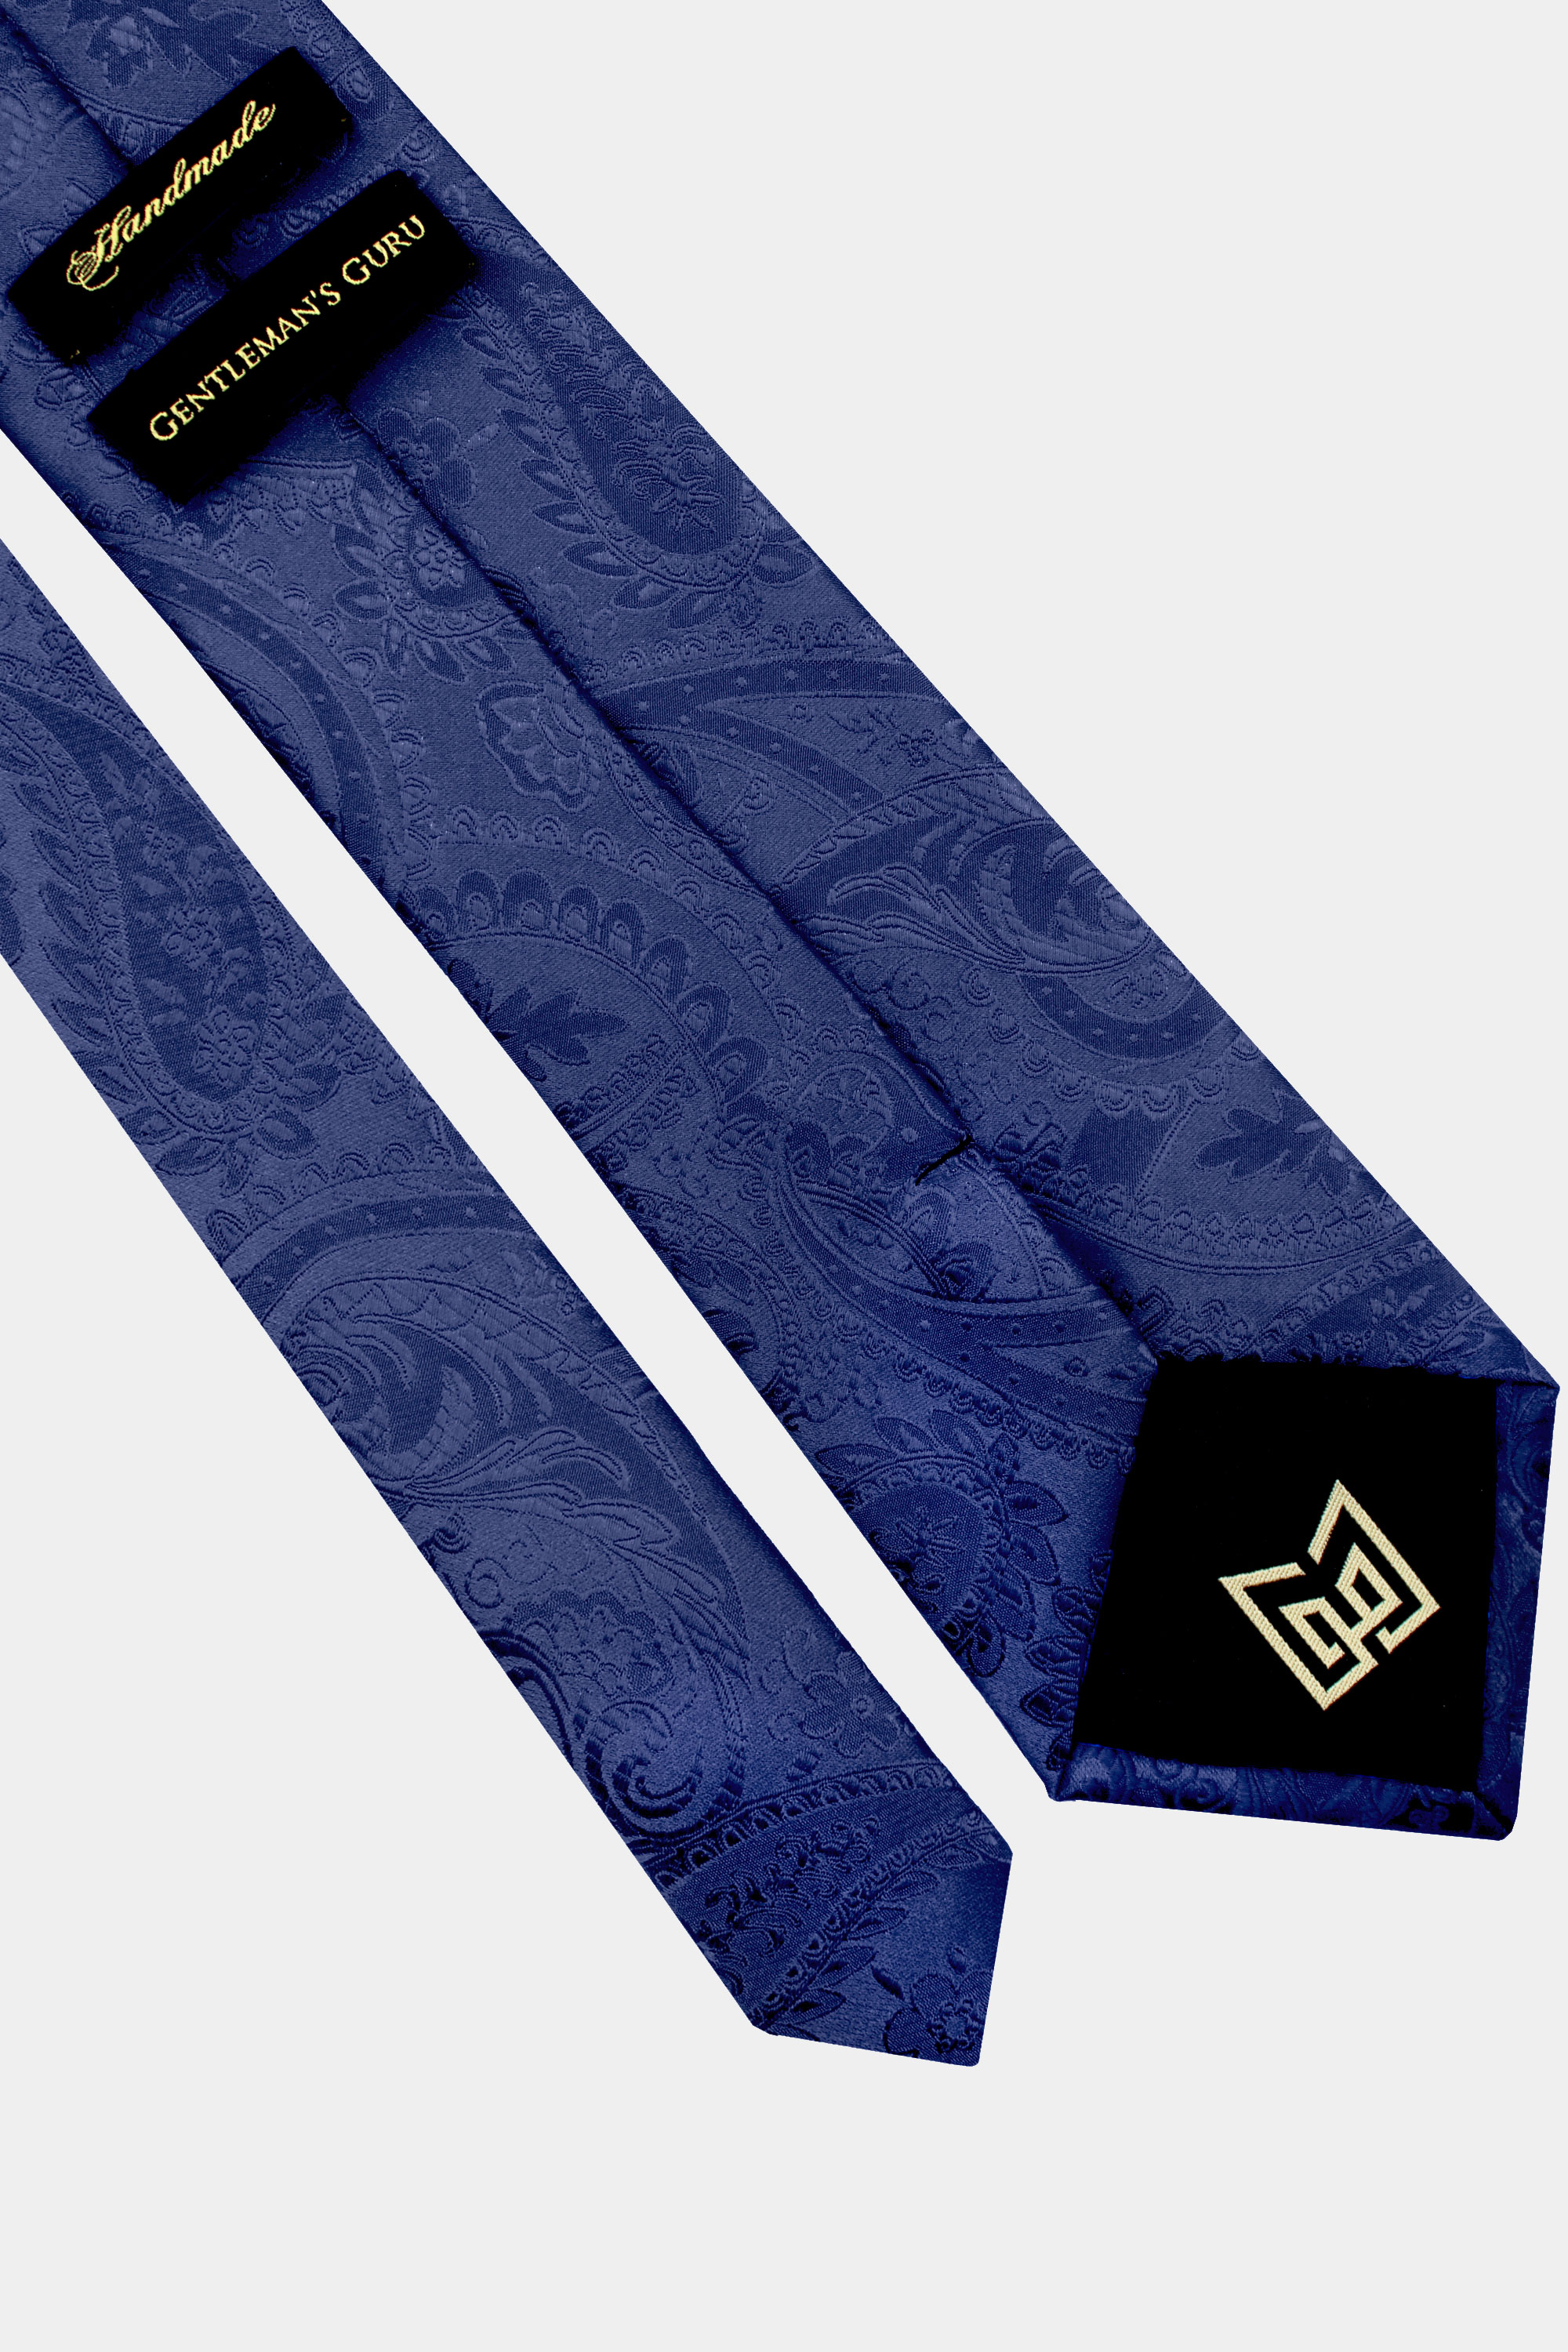 Navy-Blue-Paisley-Tie-from-Gentlemansguru.com